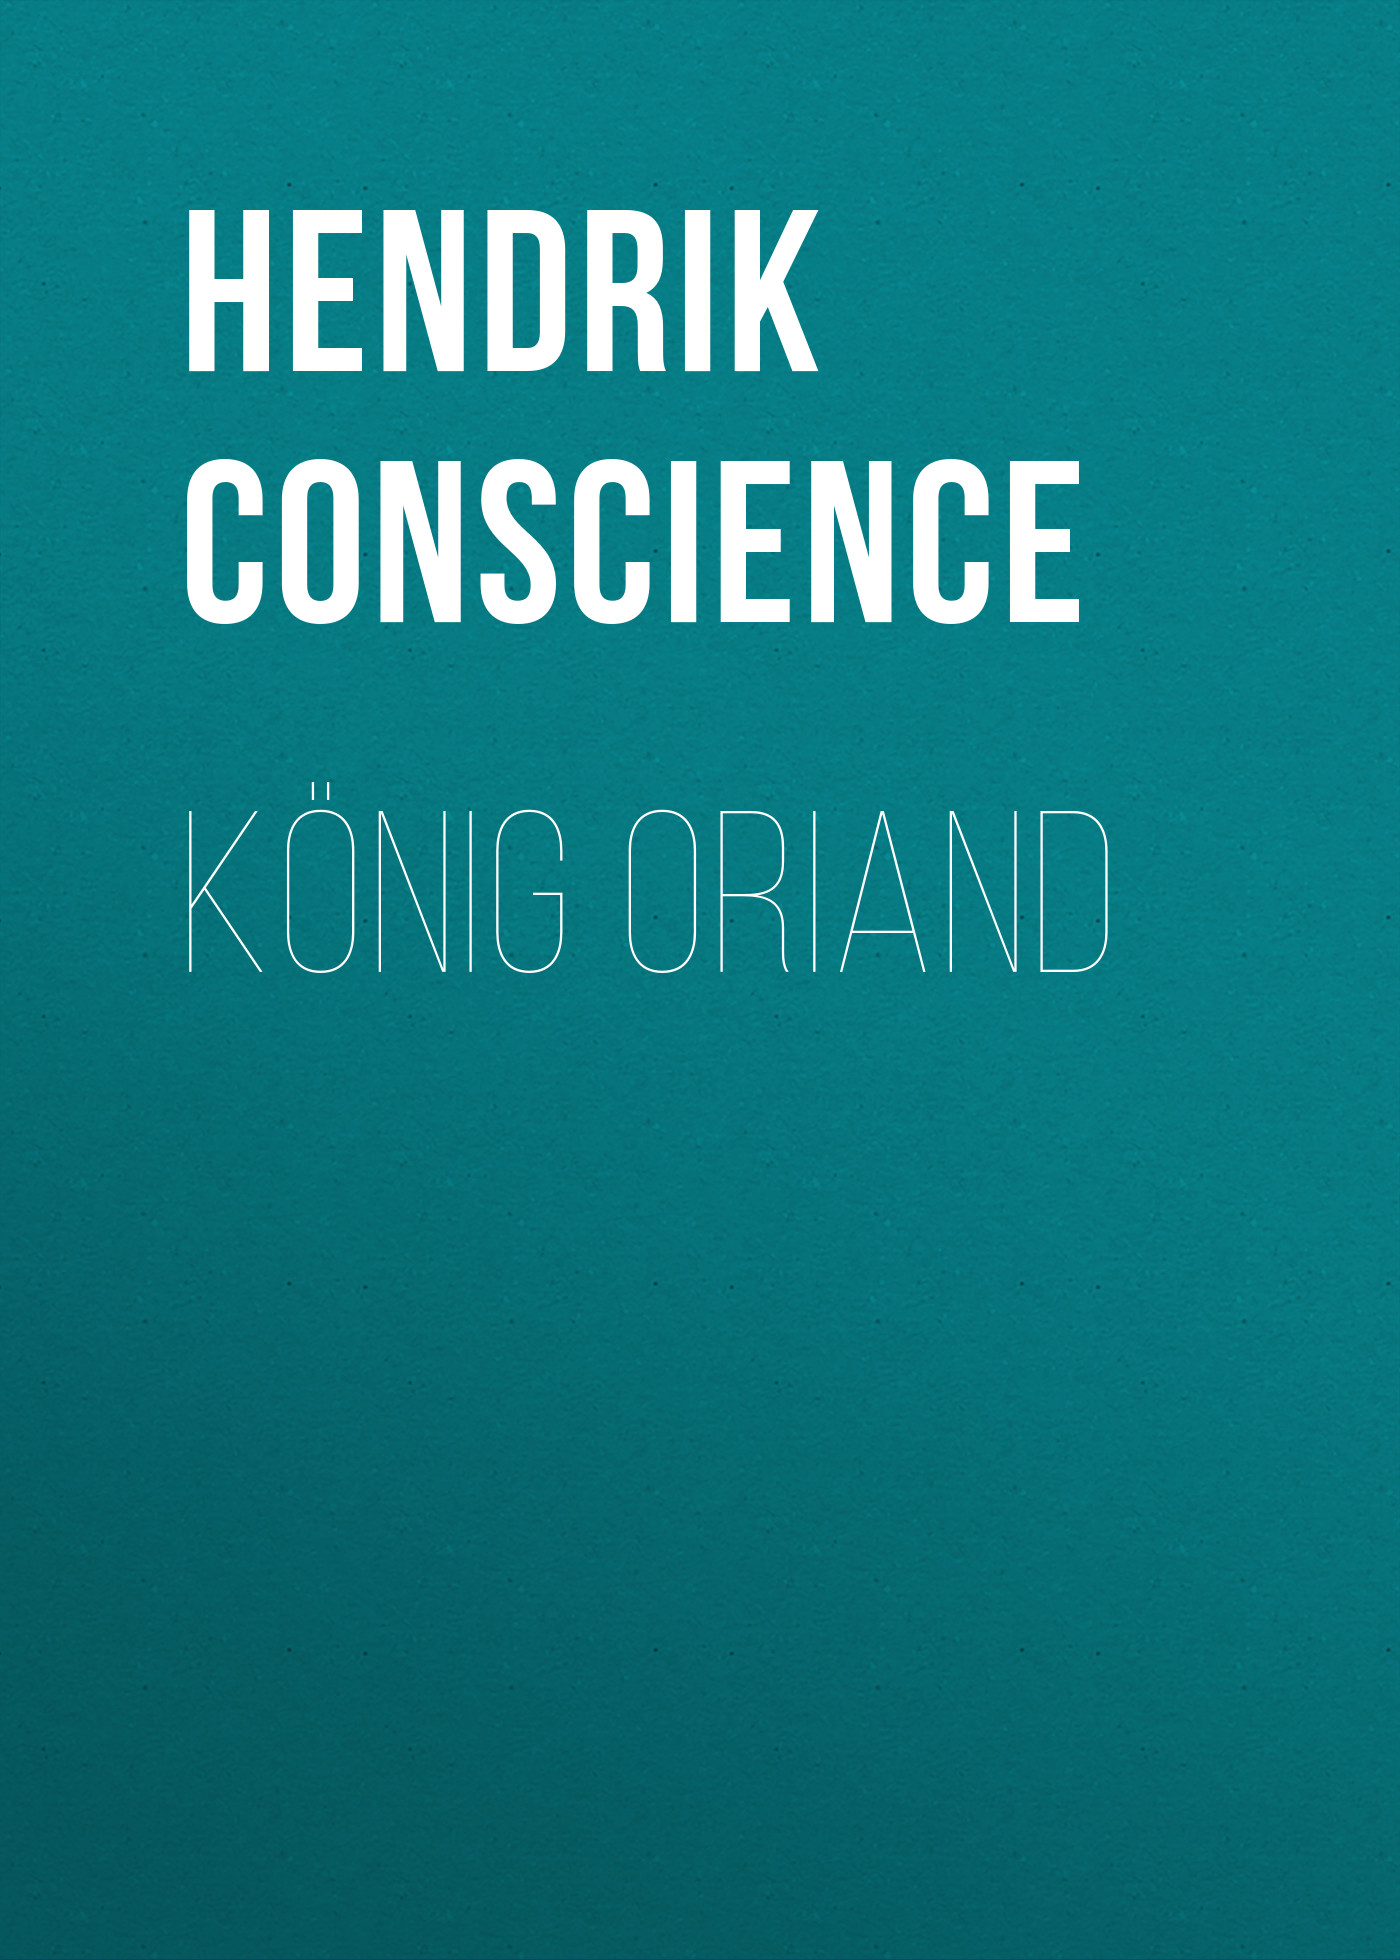 Книга König Oriand из серии , созданная Hendrik Conscience, может относится к жанру Зарубежная классика. Стоимость электронной книги König Oriand с идентификатором 48633532 составляет 0 руб.